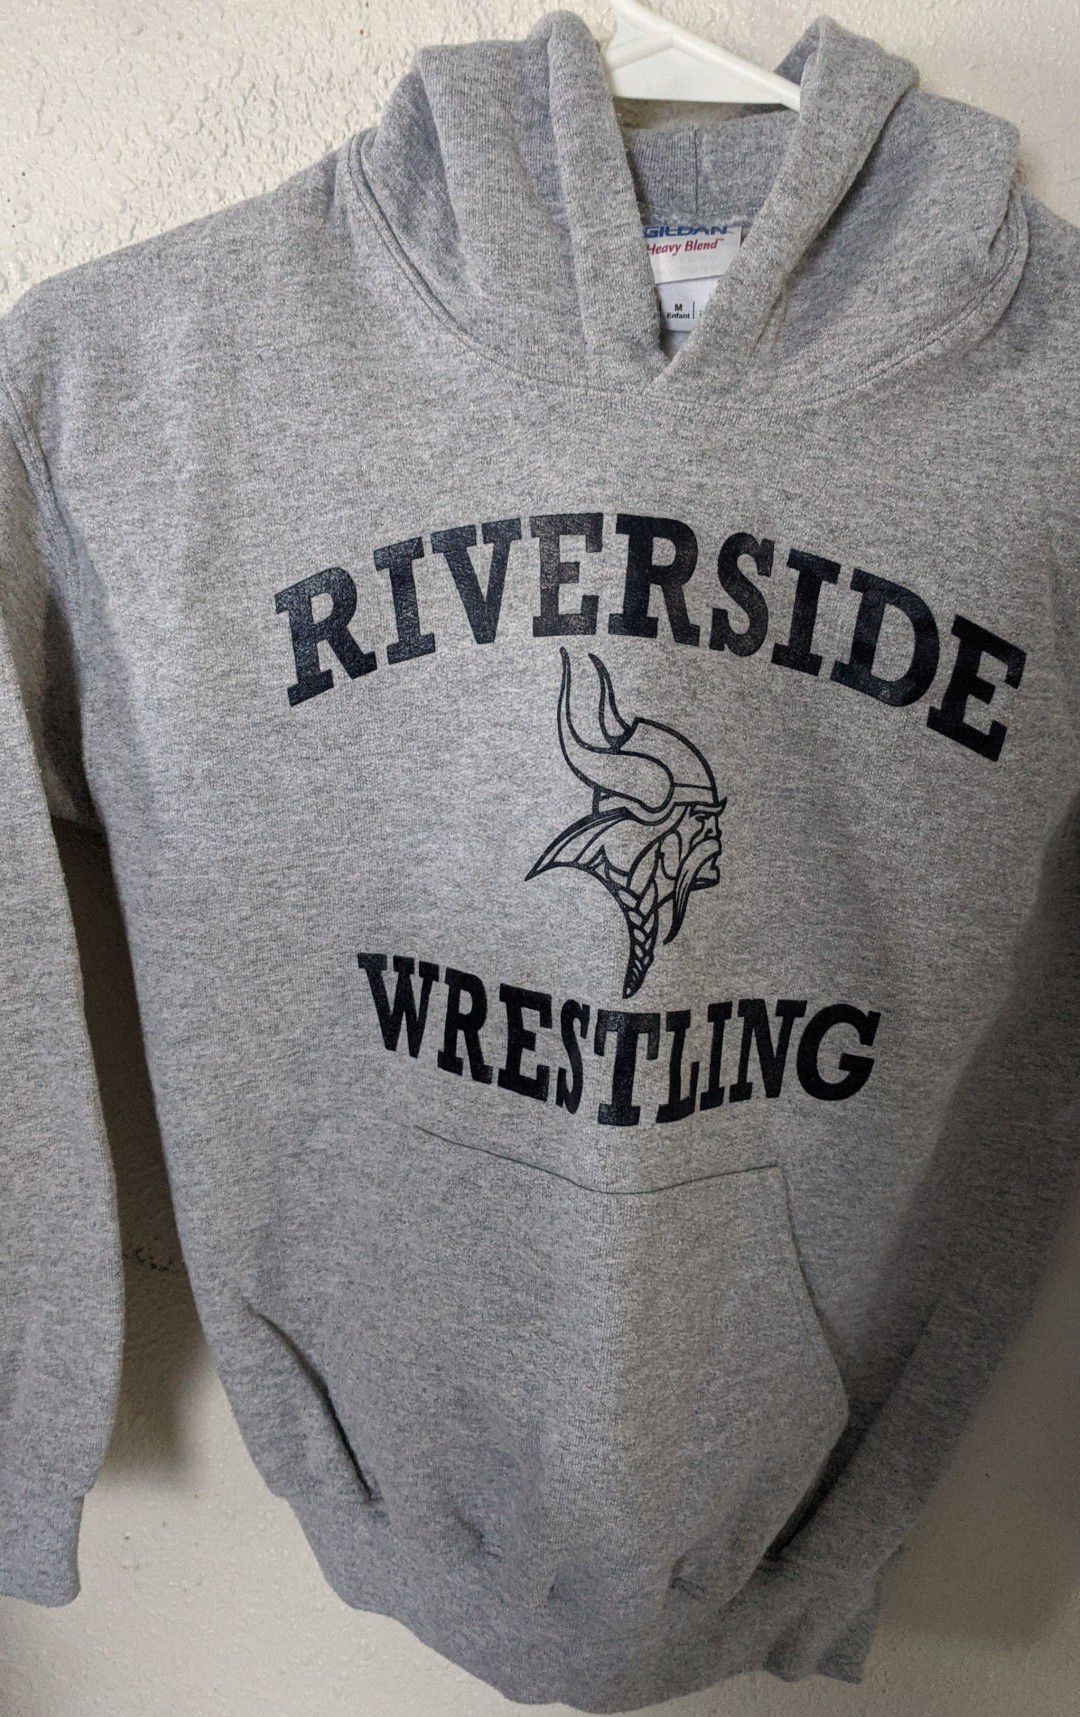 Riverside wrestling size M